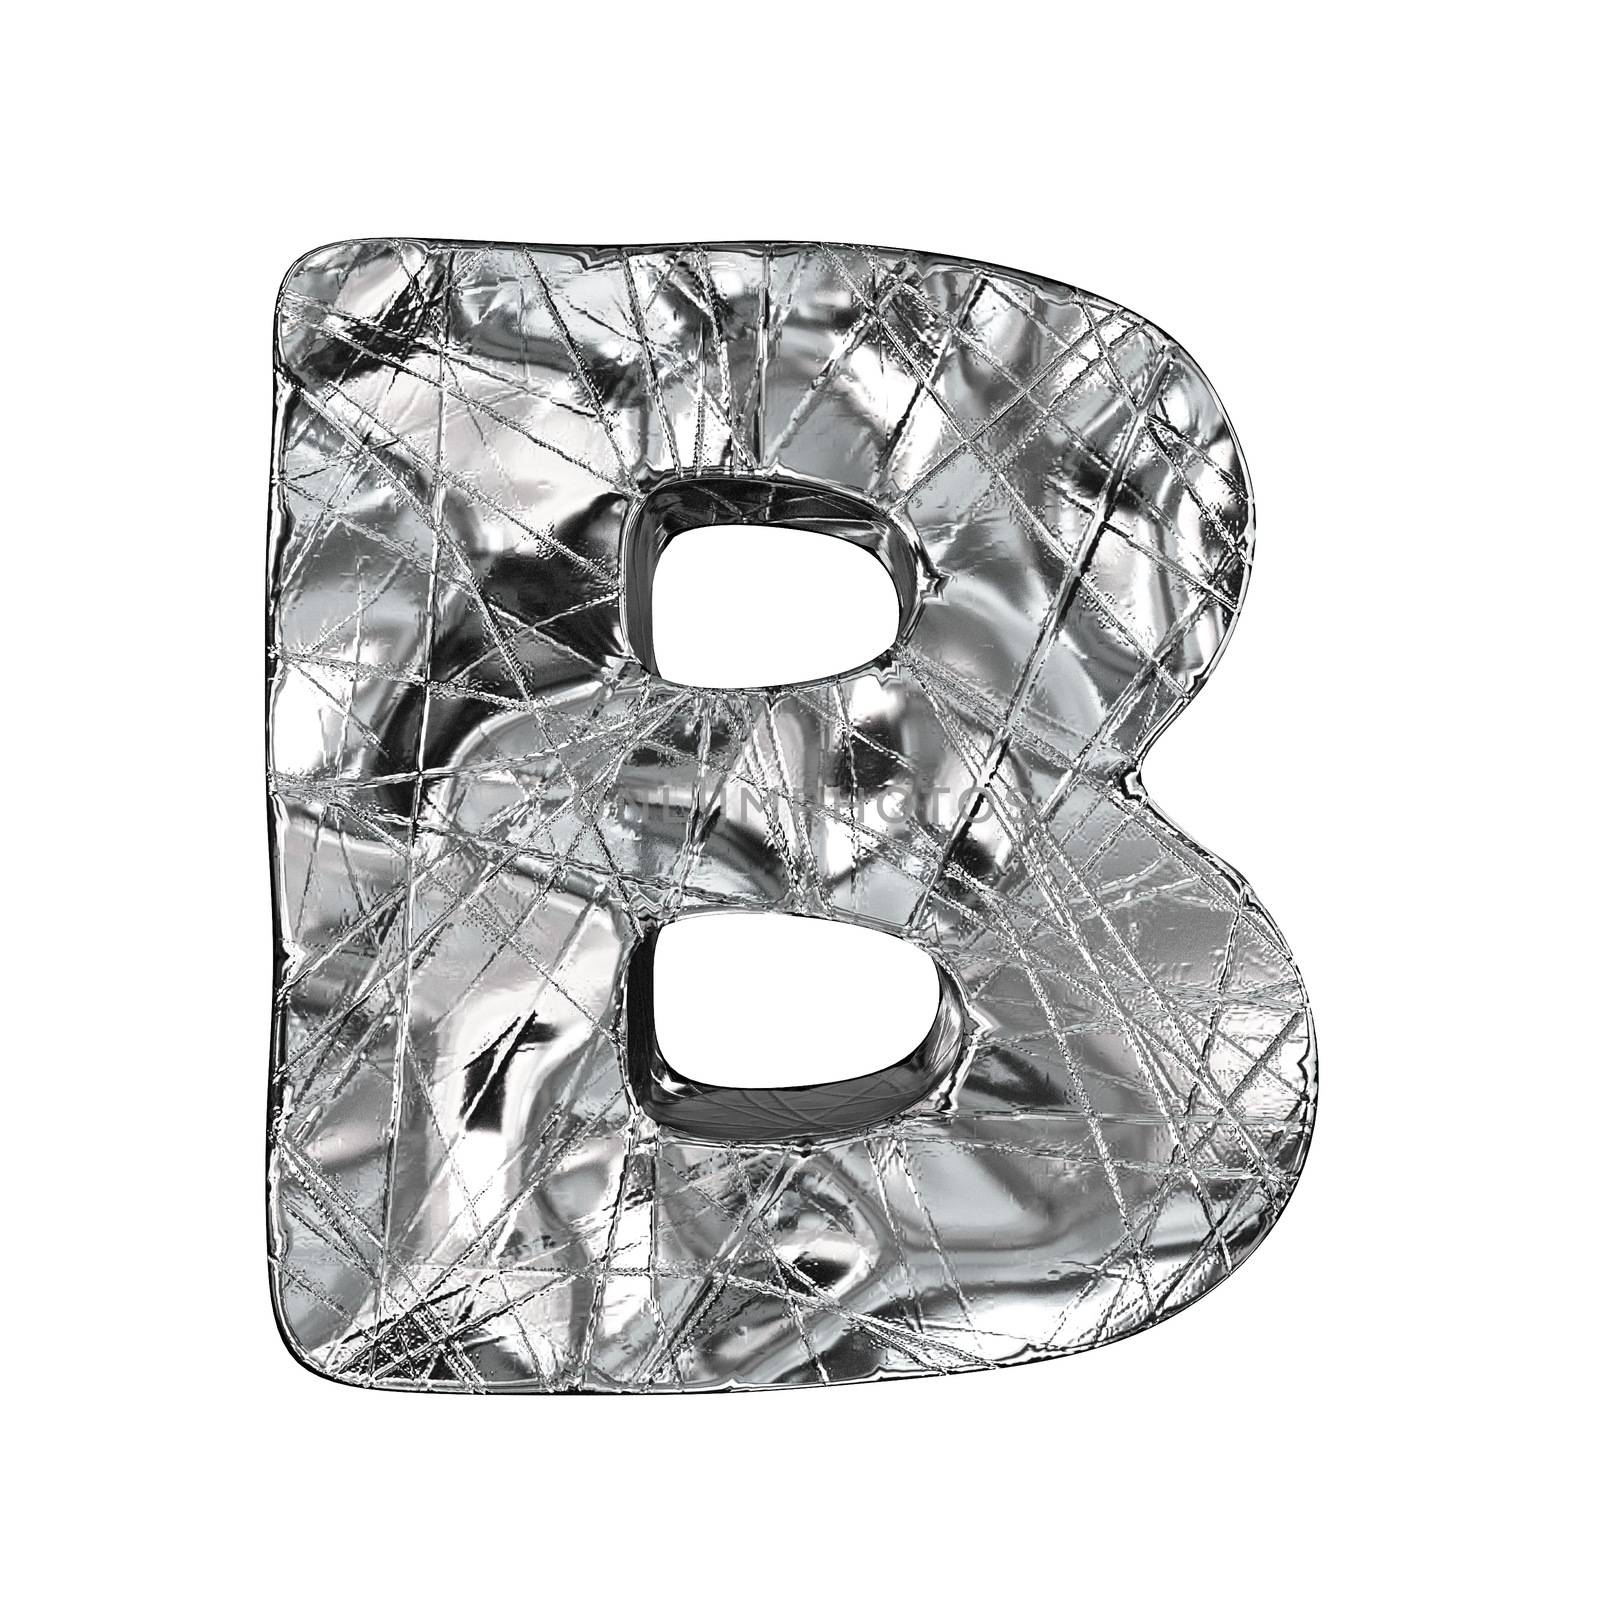 Grunge aluminium foil font letter B 3D render illustration isolated on white background